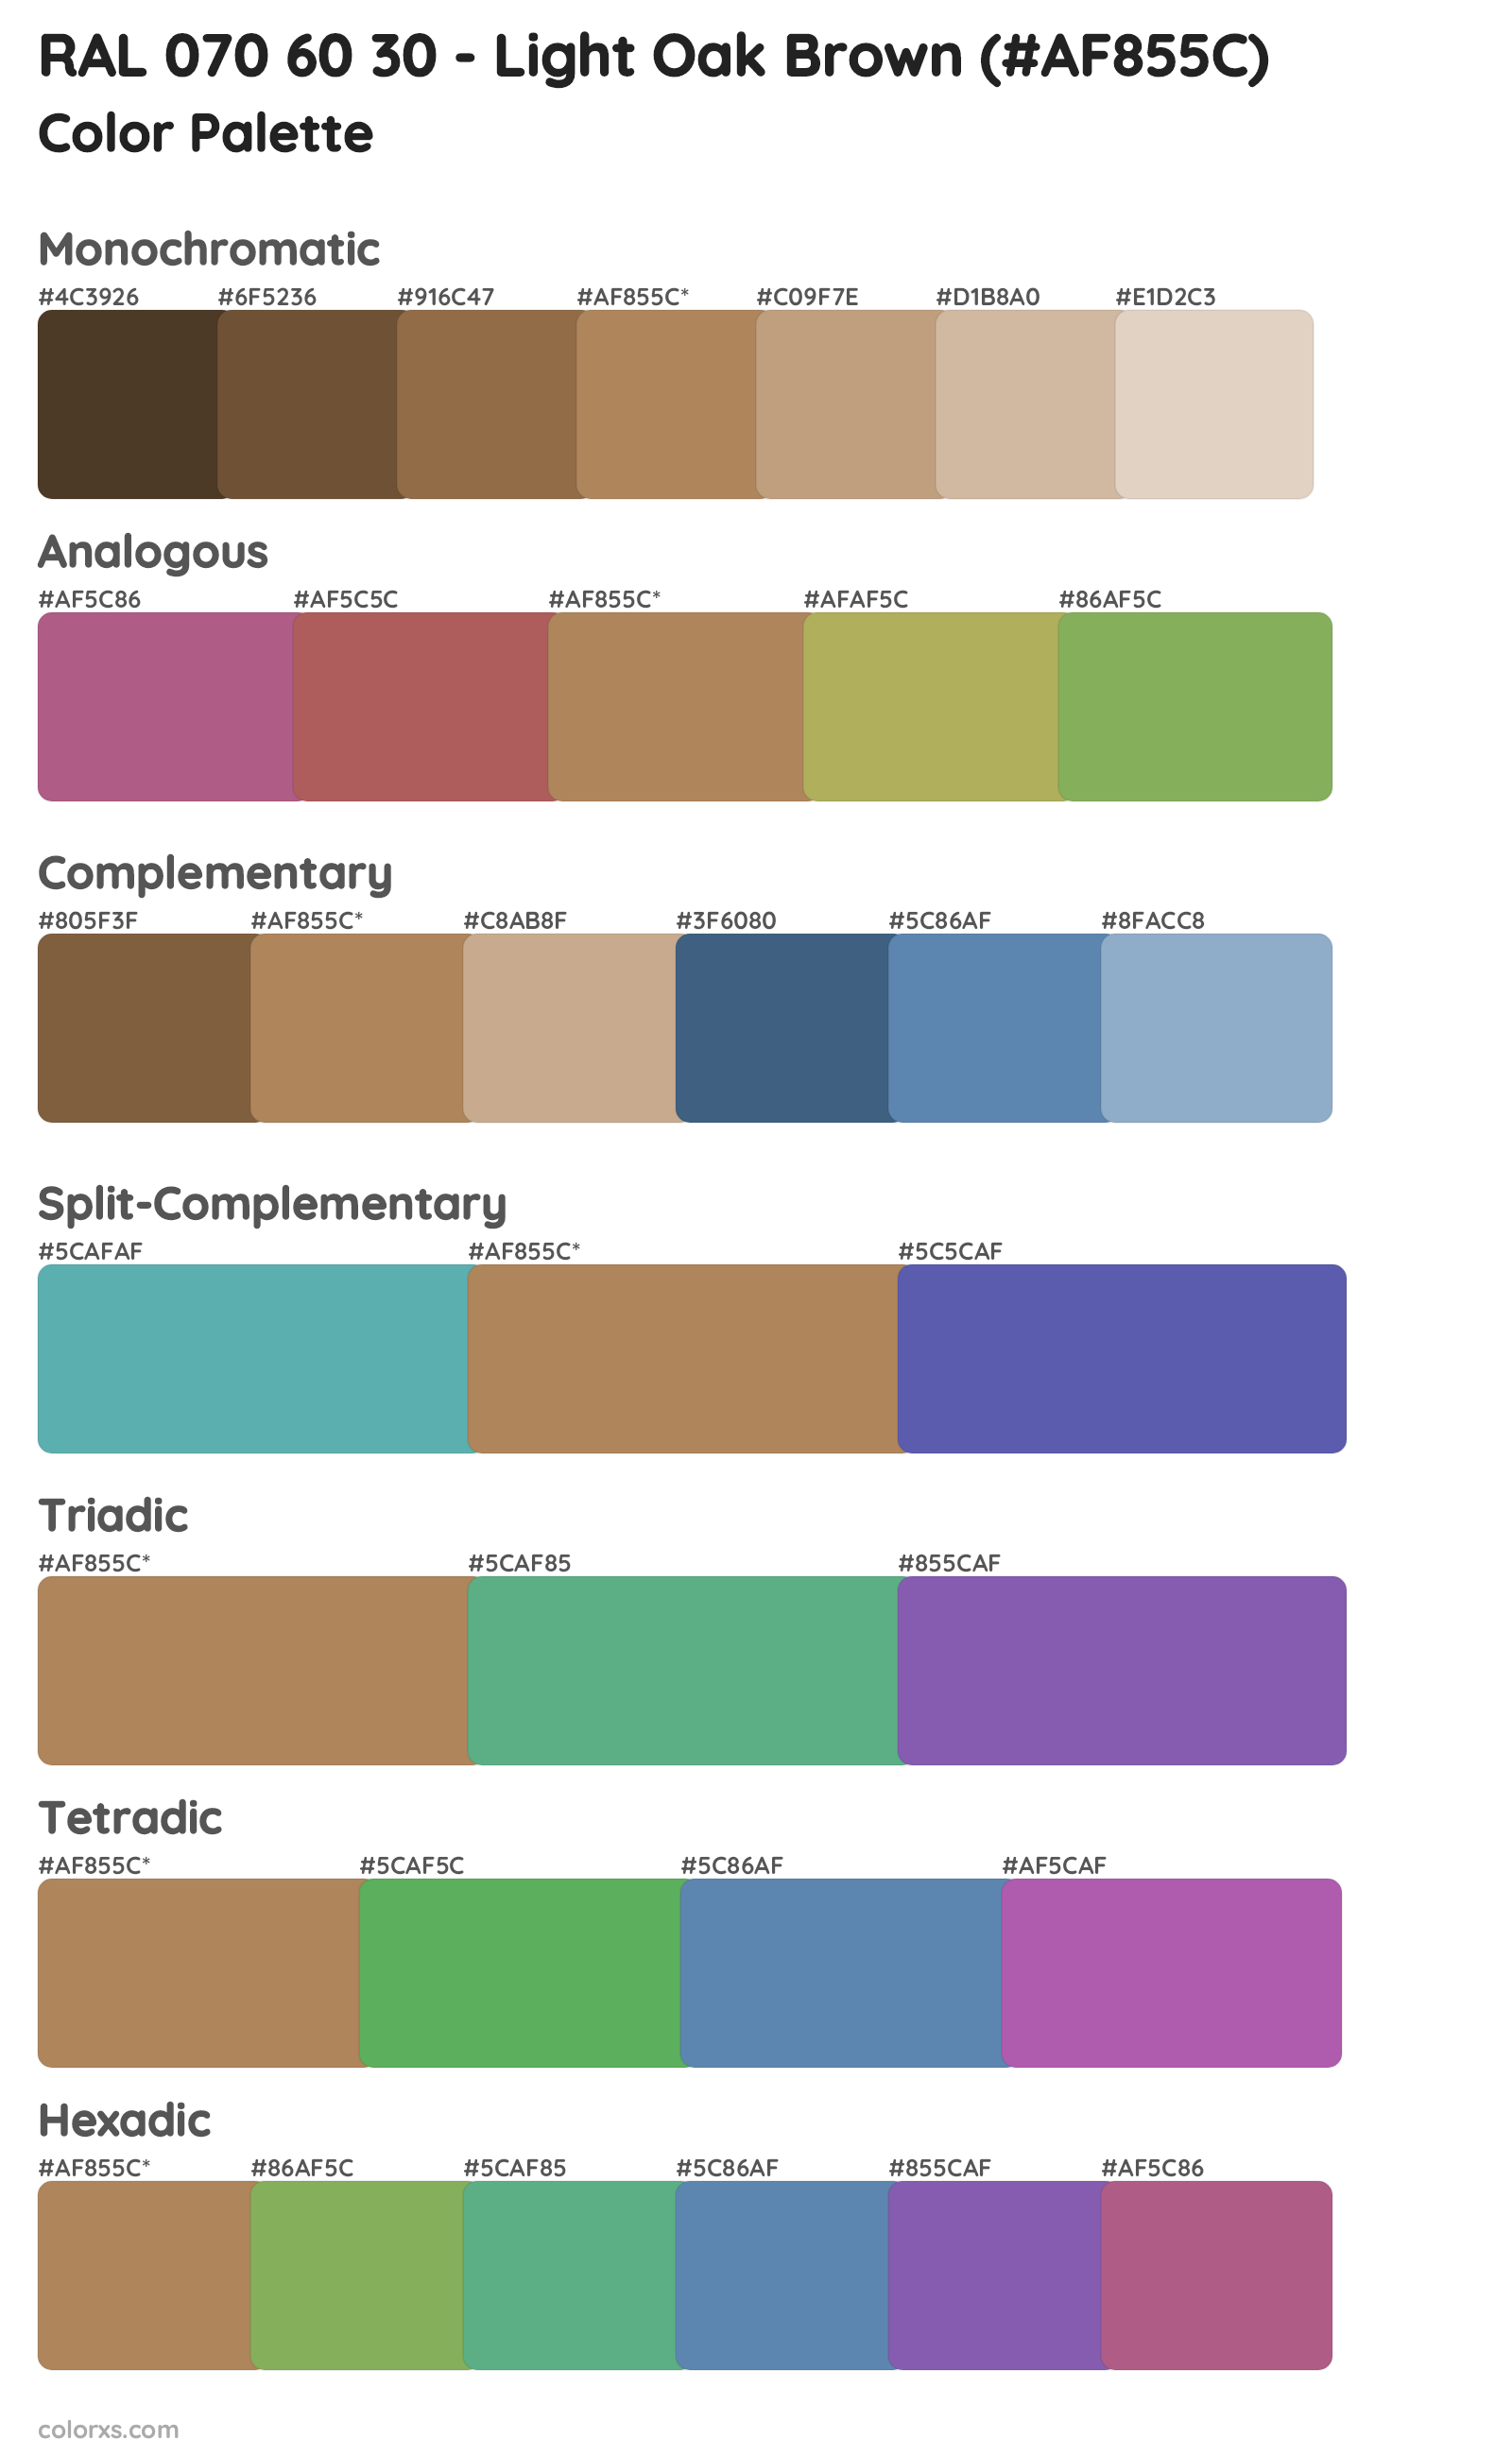 RAL 070 60 30 - Light Oak Brown Color Scheme Palettes